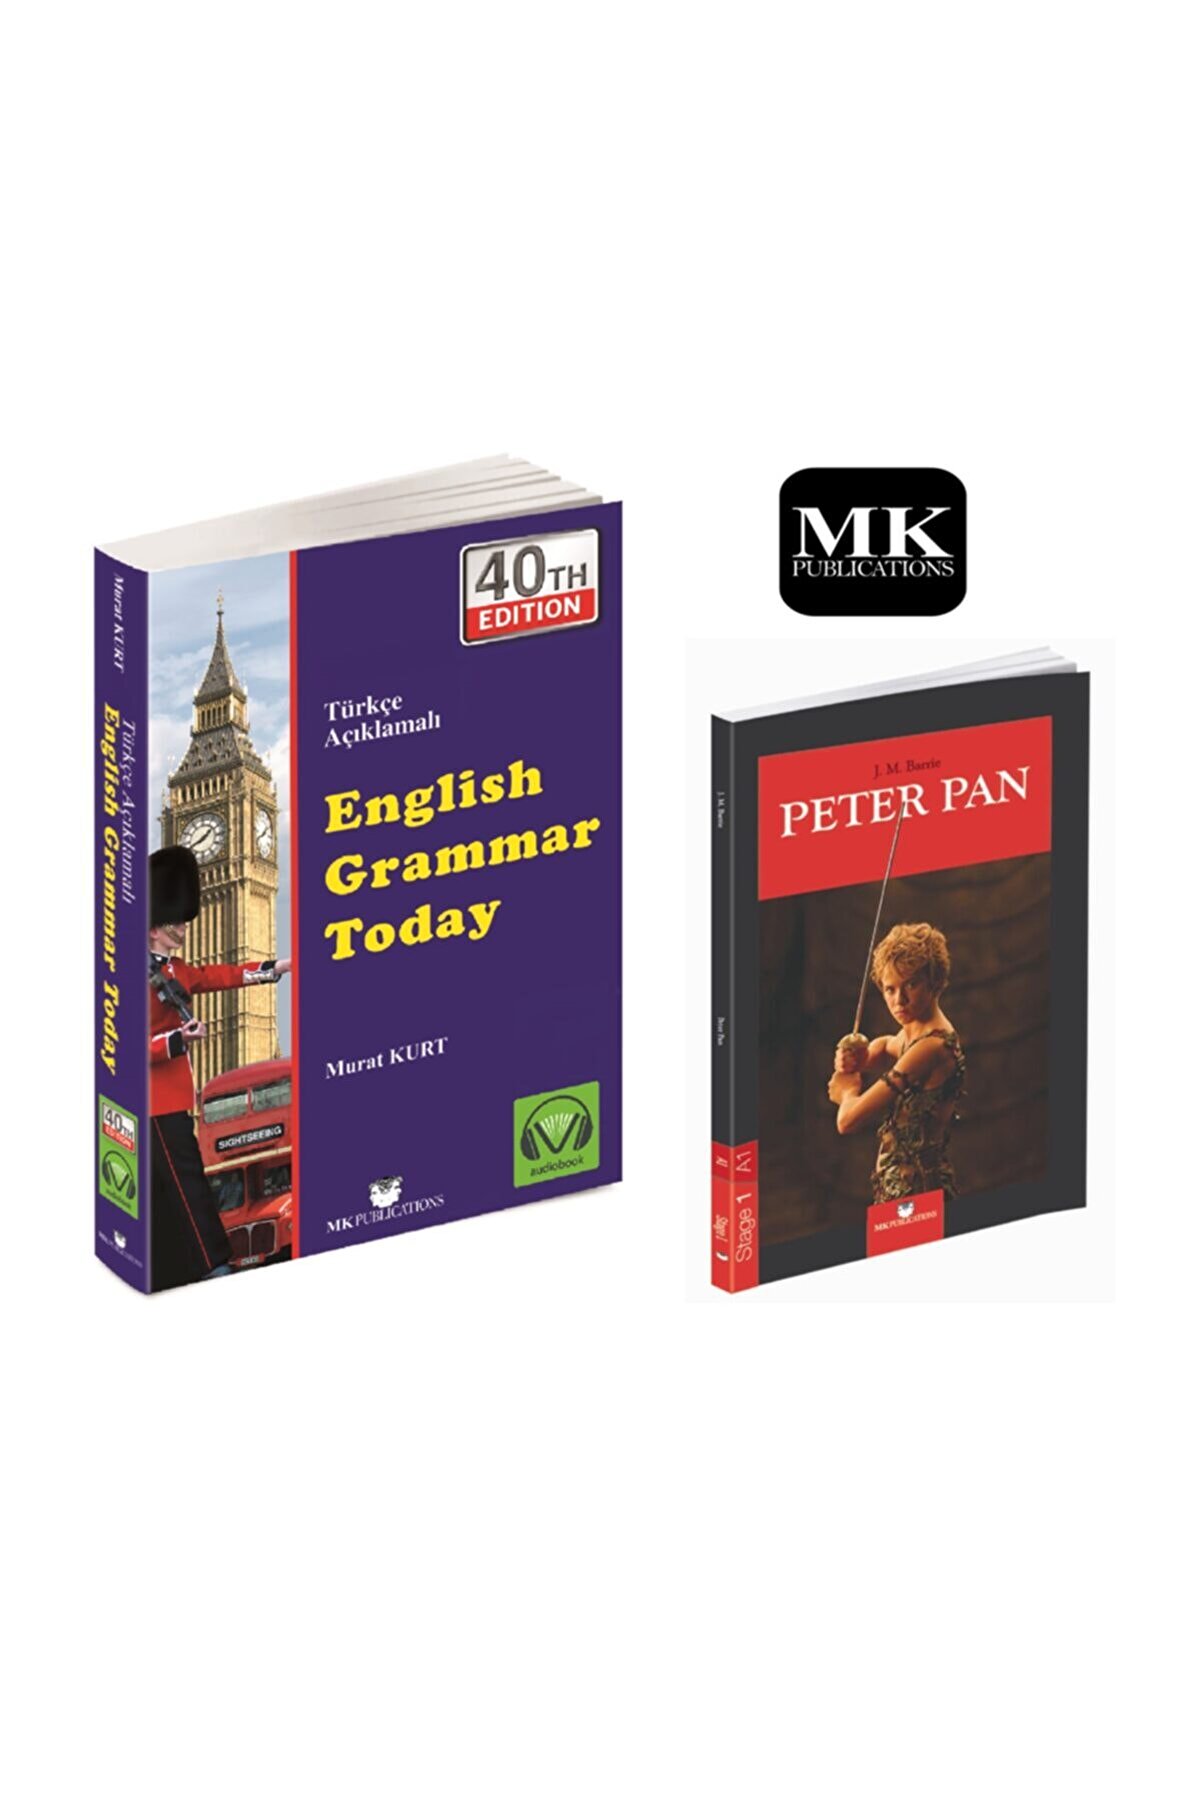 MK Publications English Grammar Today, Türkçe Açıklamalı Gramer Kitabı Yeni Baskı + Ingilizce A.1 Hikaye Peter Pan